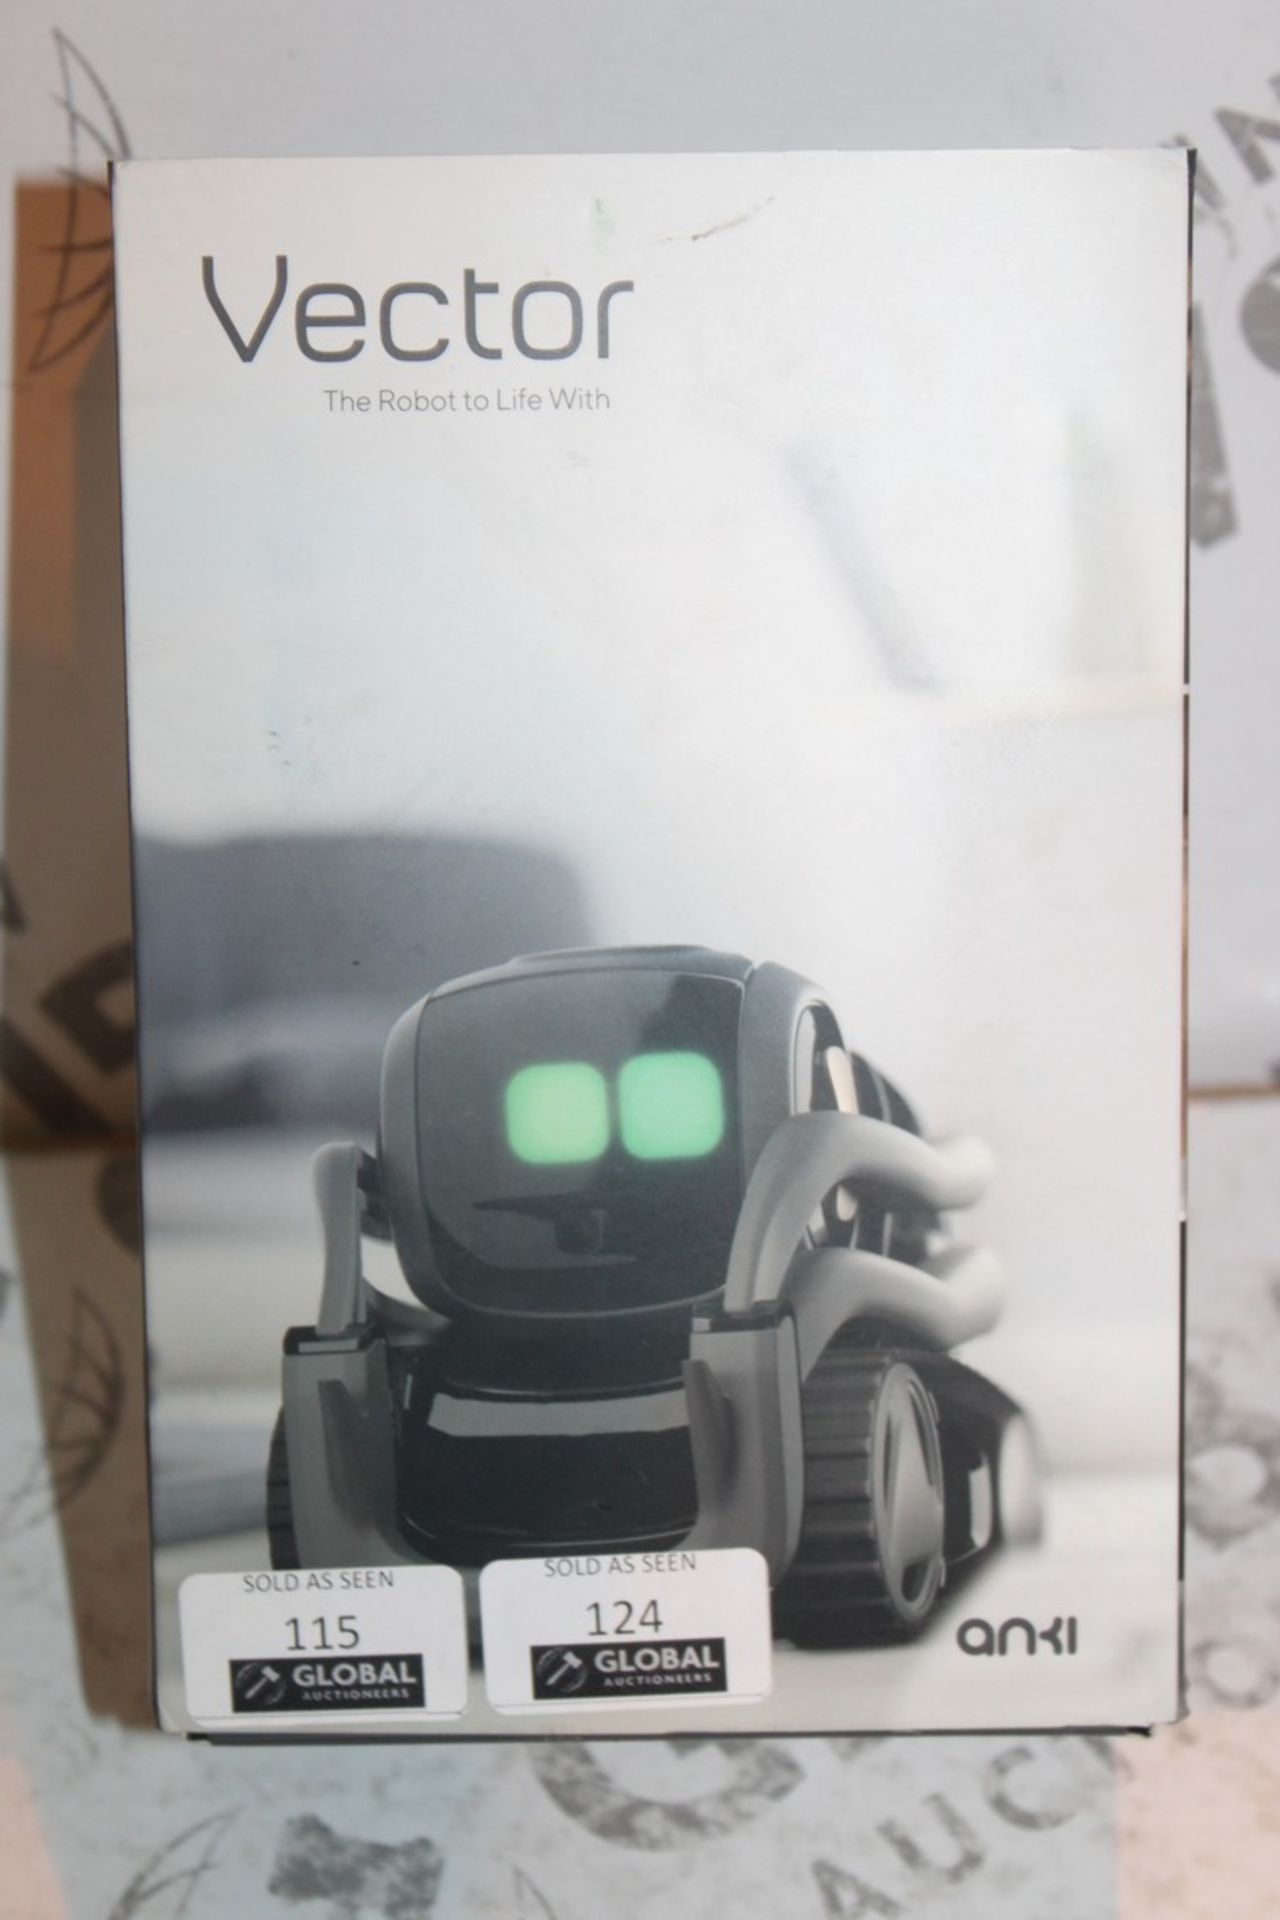 Boxed Anki Vector Robot RRP £249